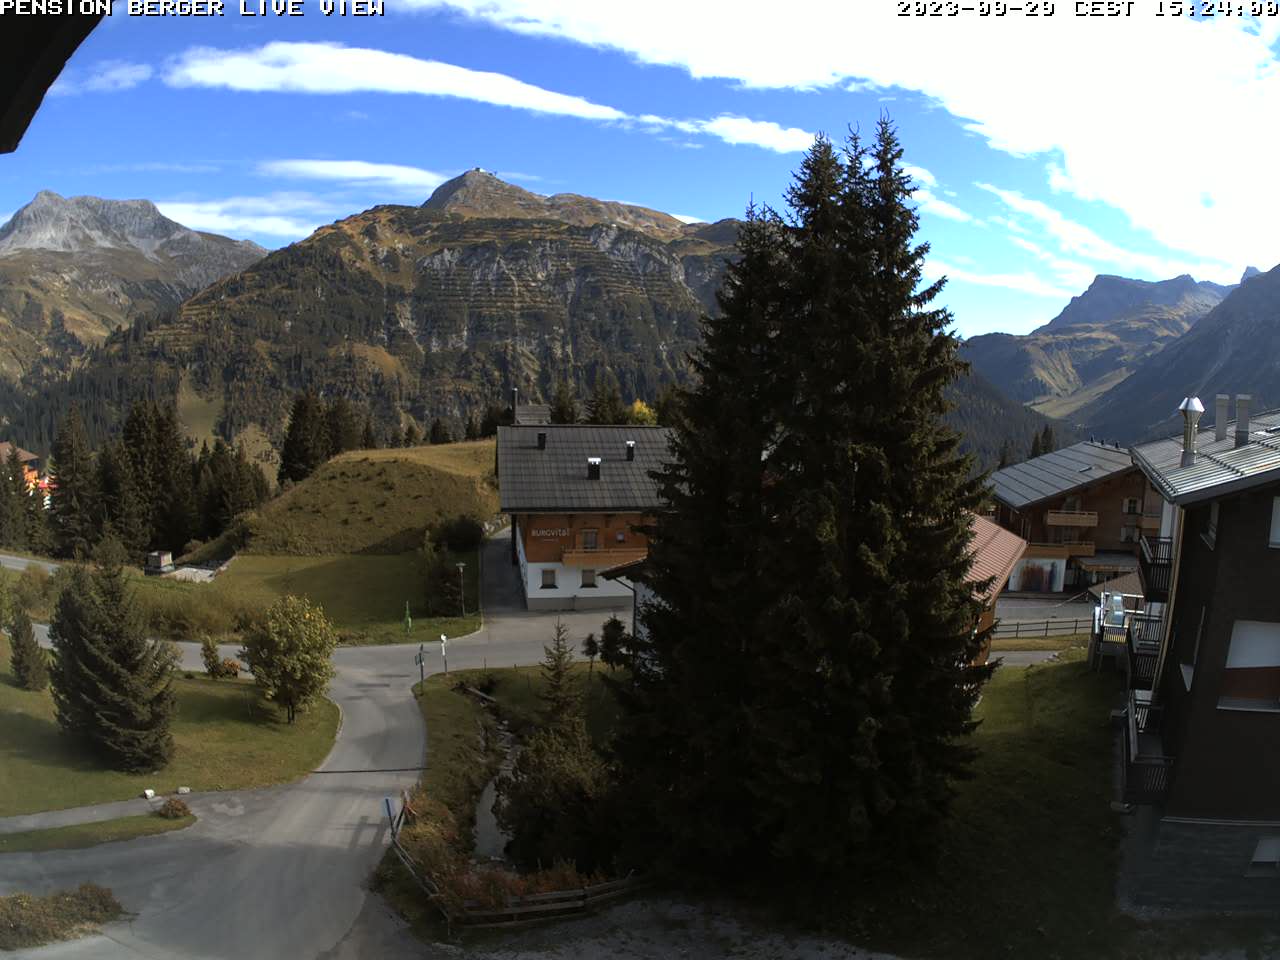 Lech am Arlberg, Pension Berger / Österreich